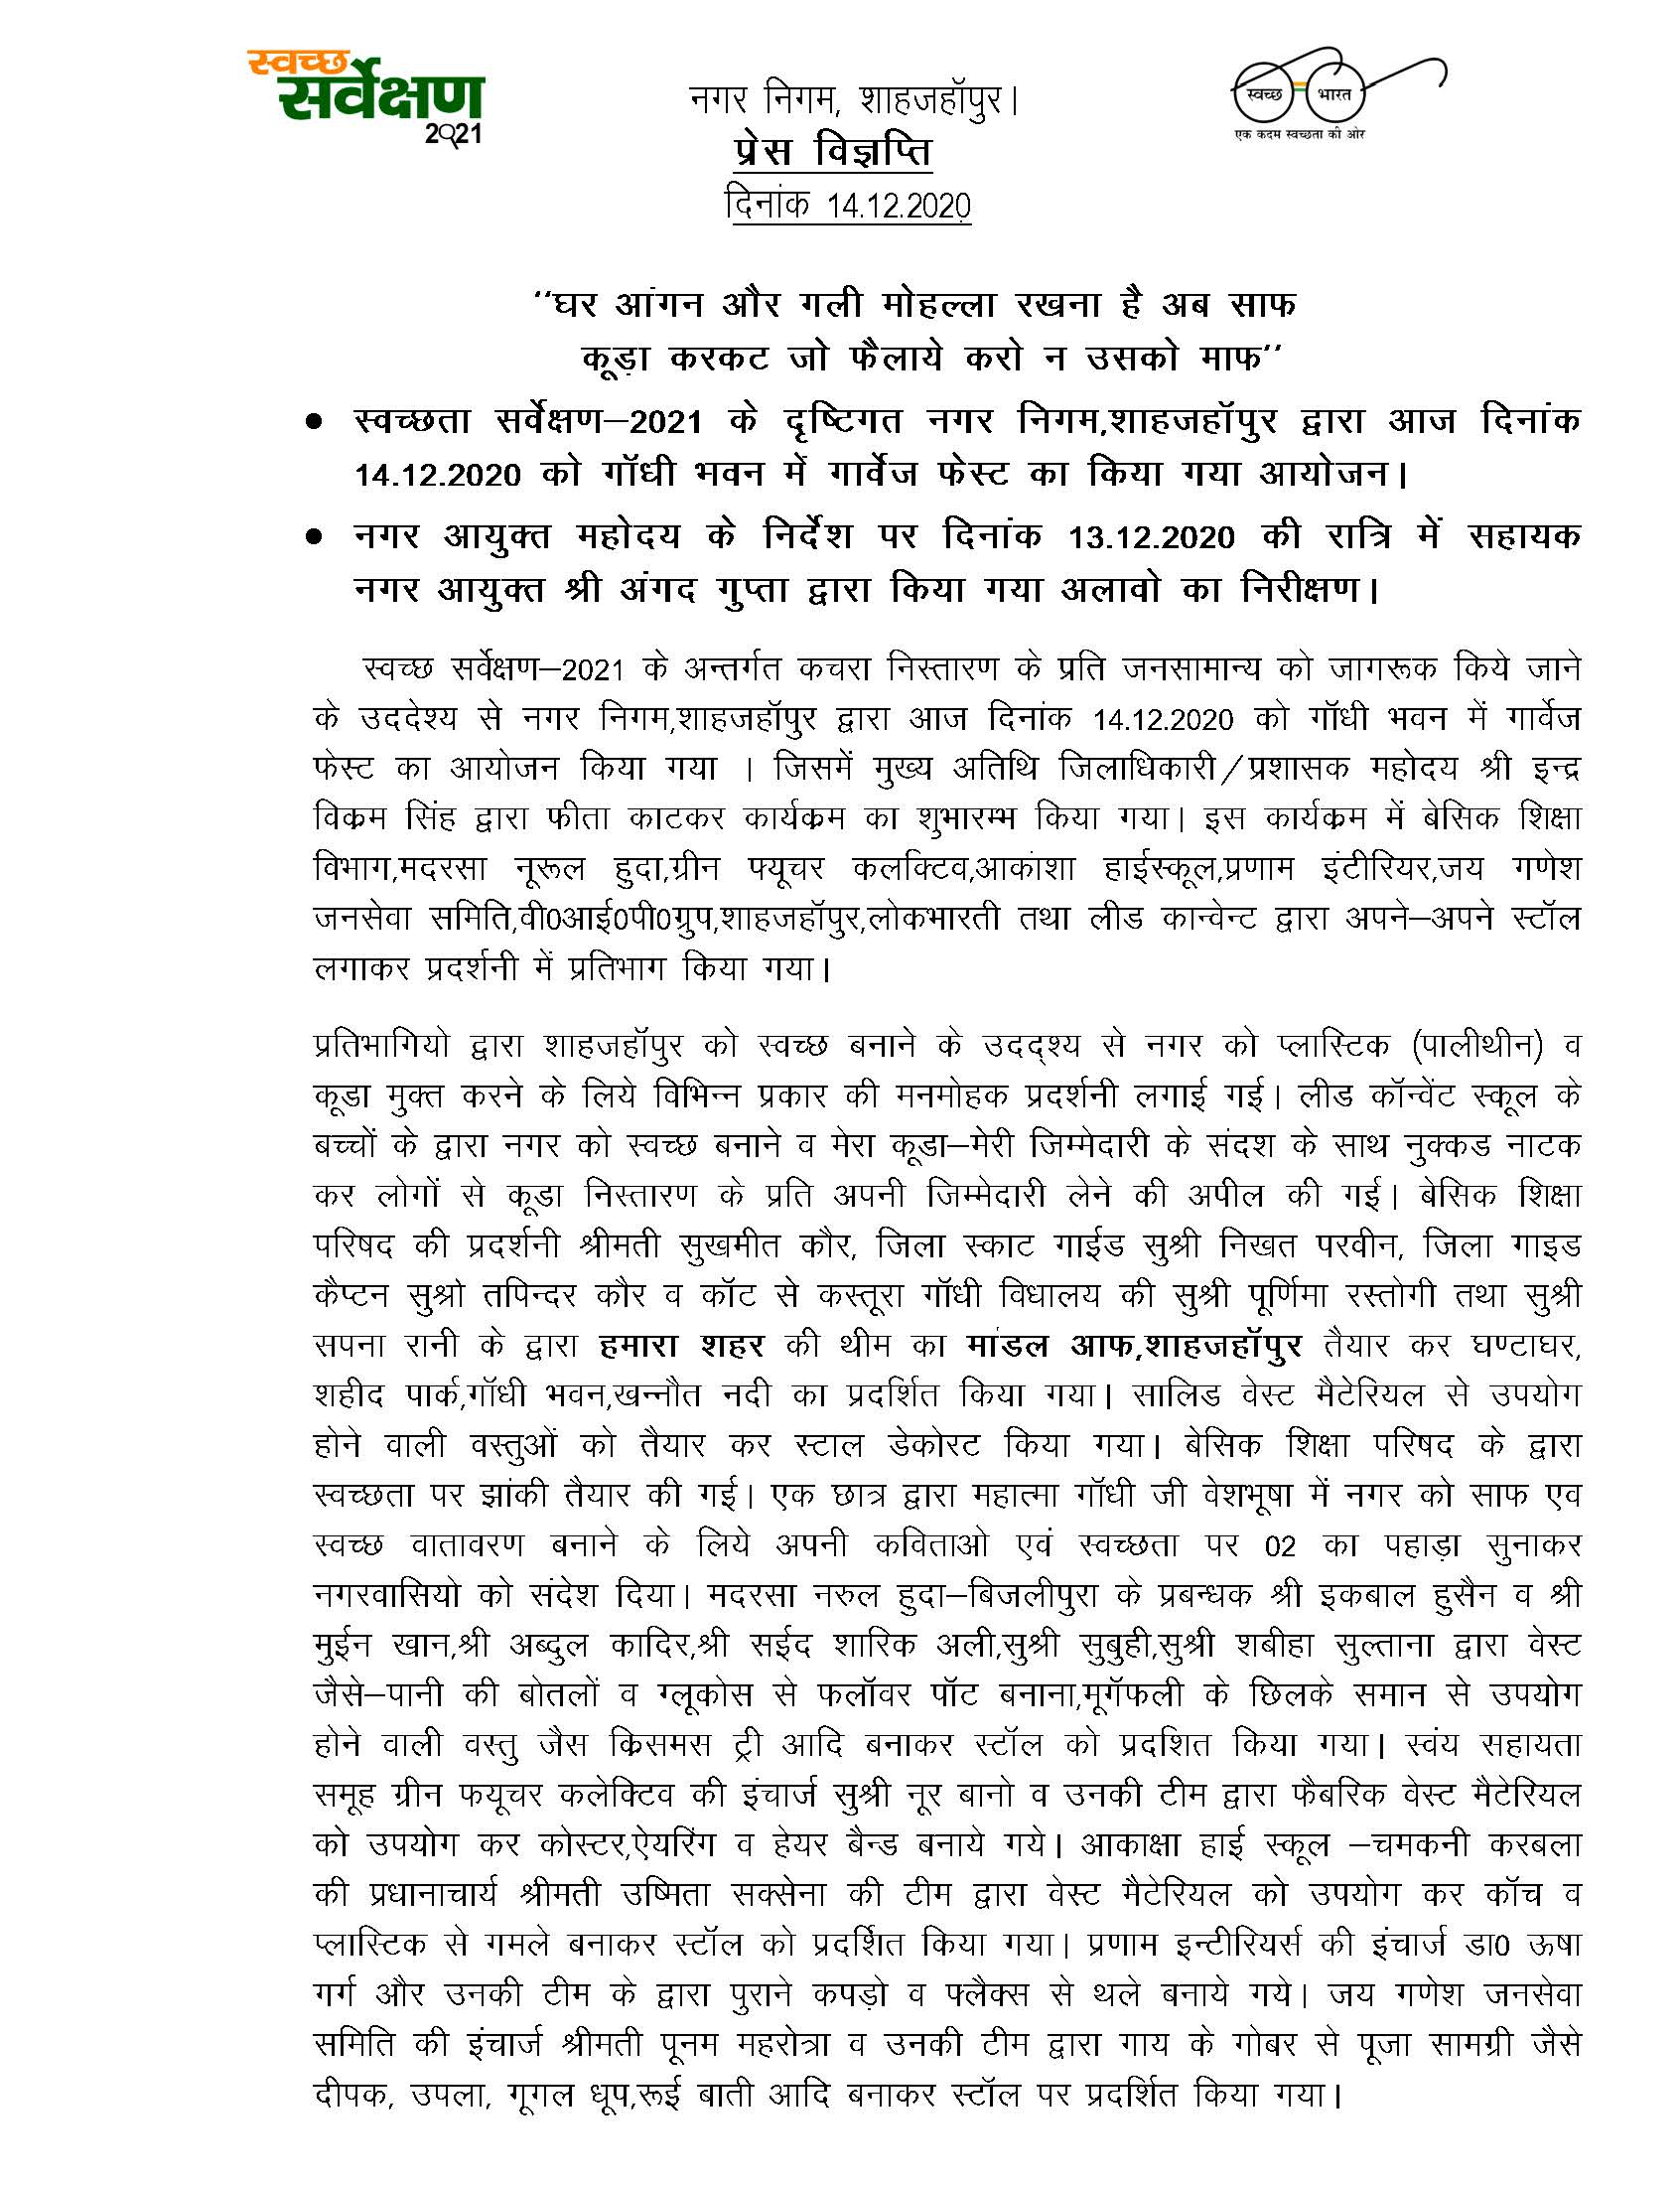 Regarding organizing of Garbage Fest in Gandhi Bhavan on 14.12.2020 by Nagar Nigam in view of Cleanliness Survey-2021